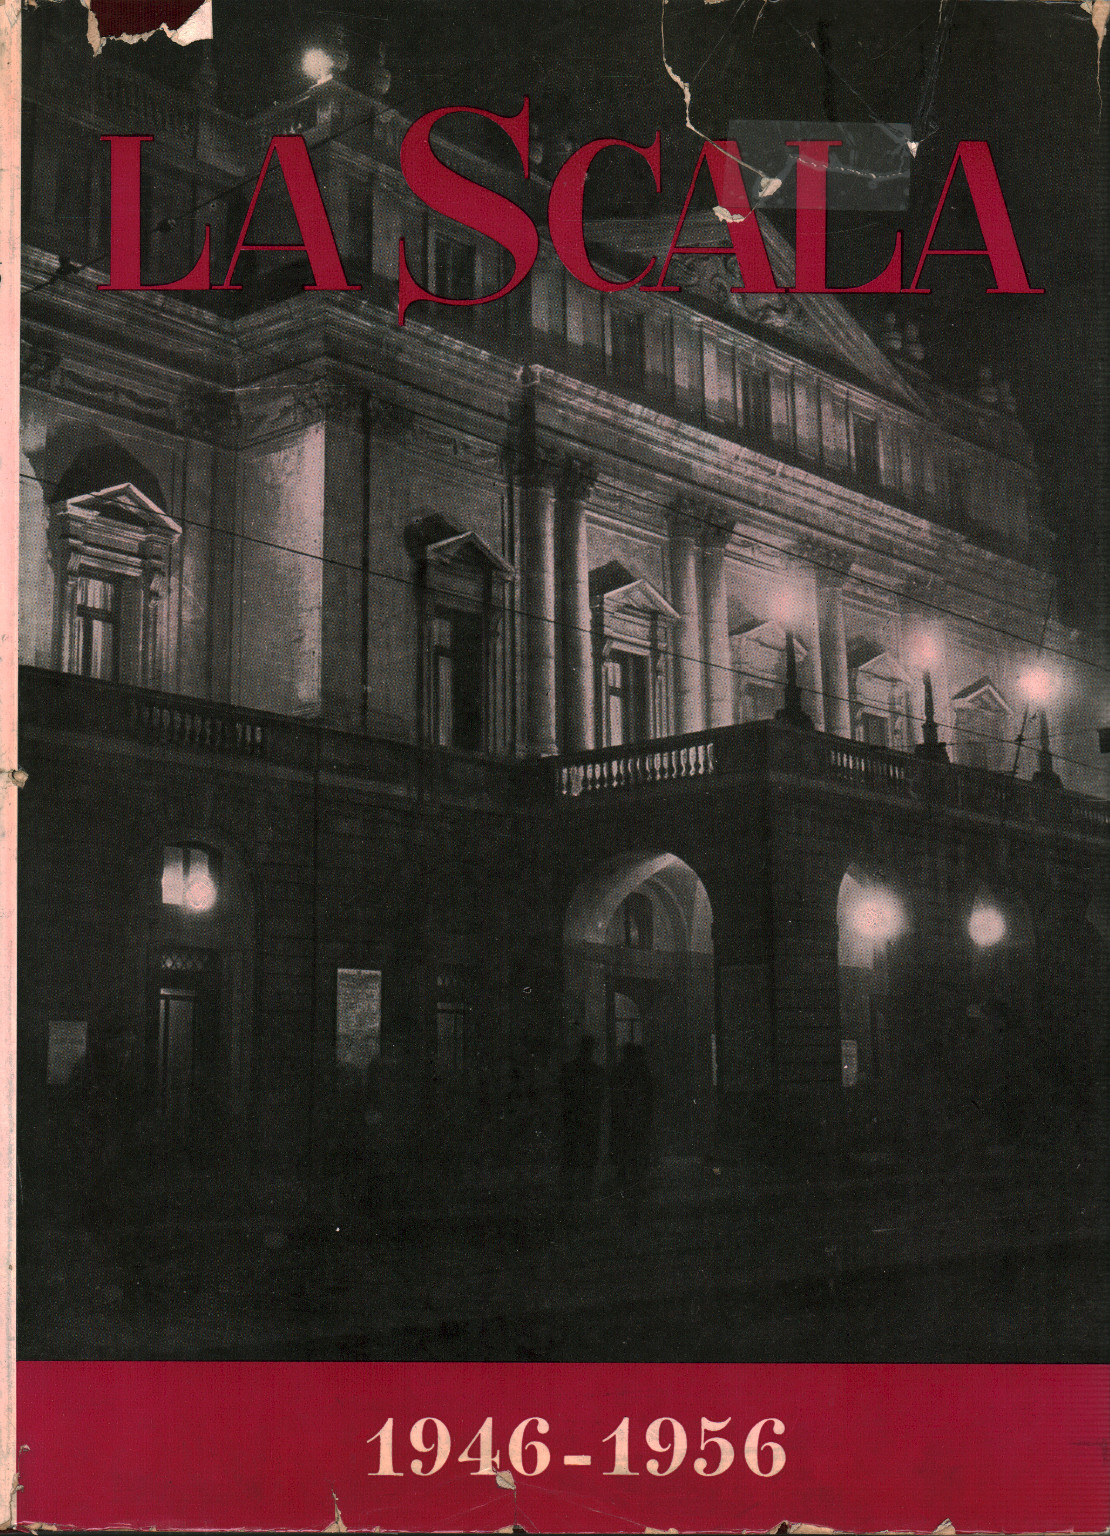 La Scala 1946-1956, s.a.